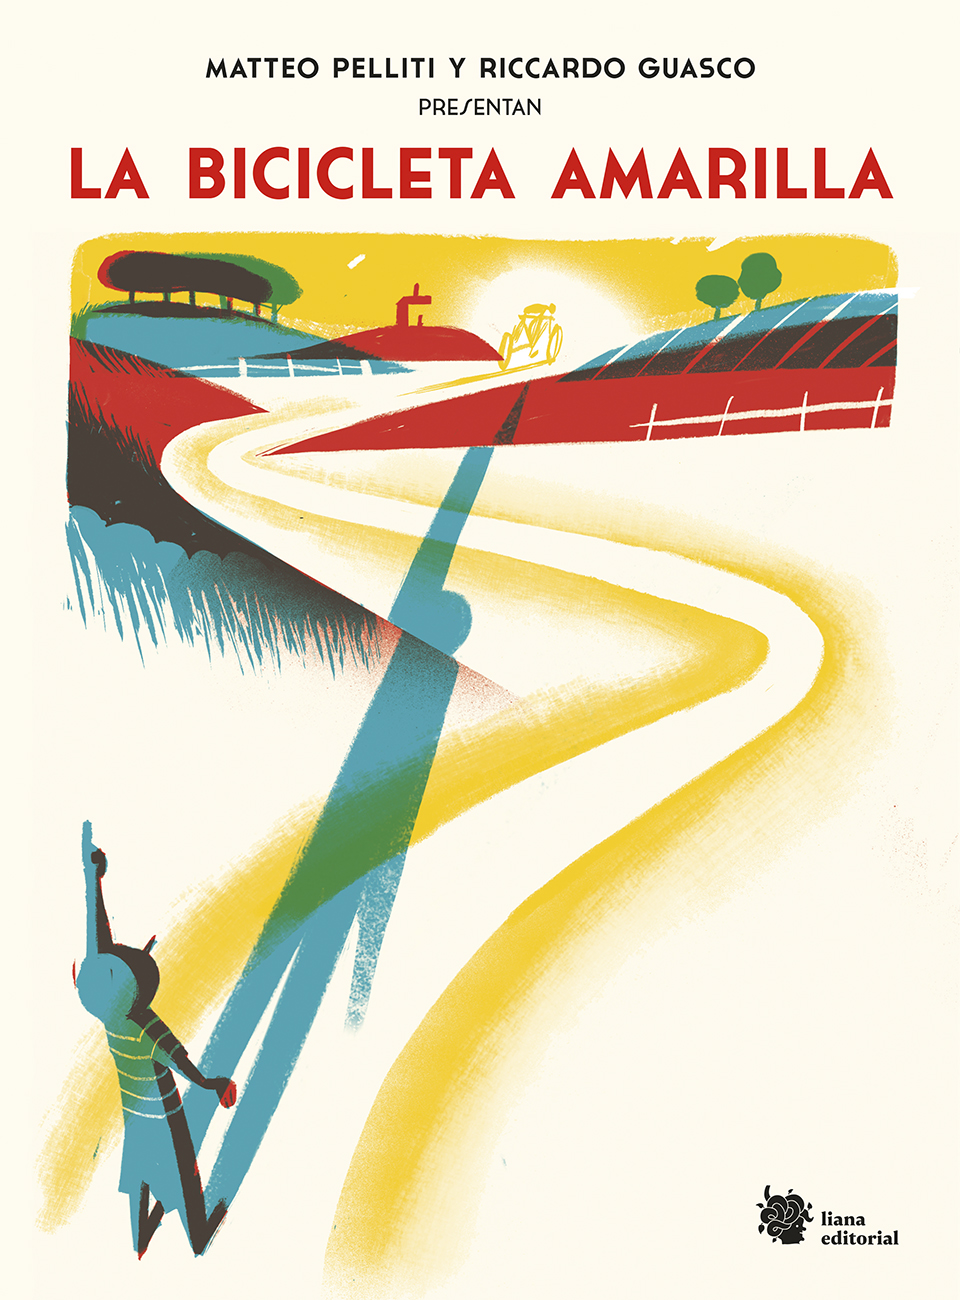 ¿Qué han dicho de La bicicleta amarilla en la prensa española?